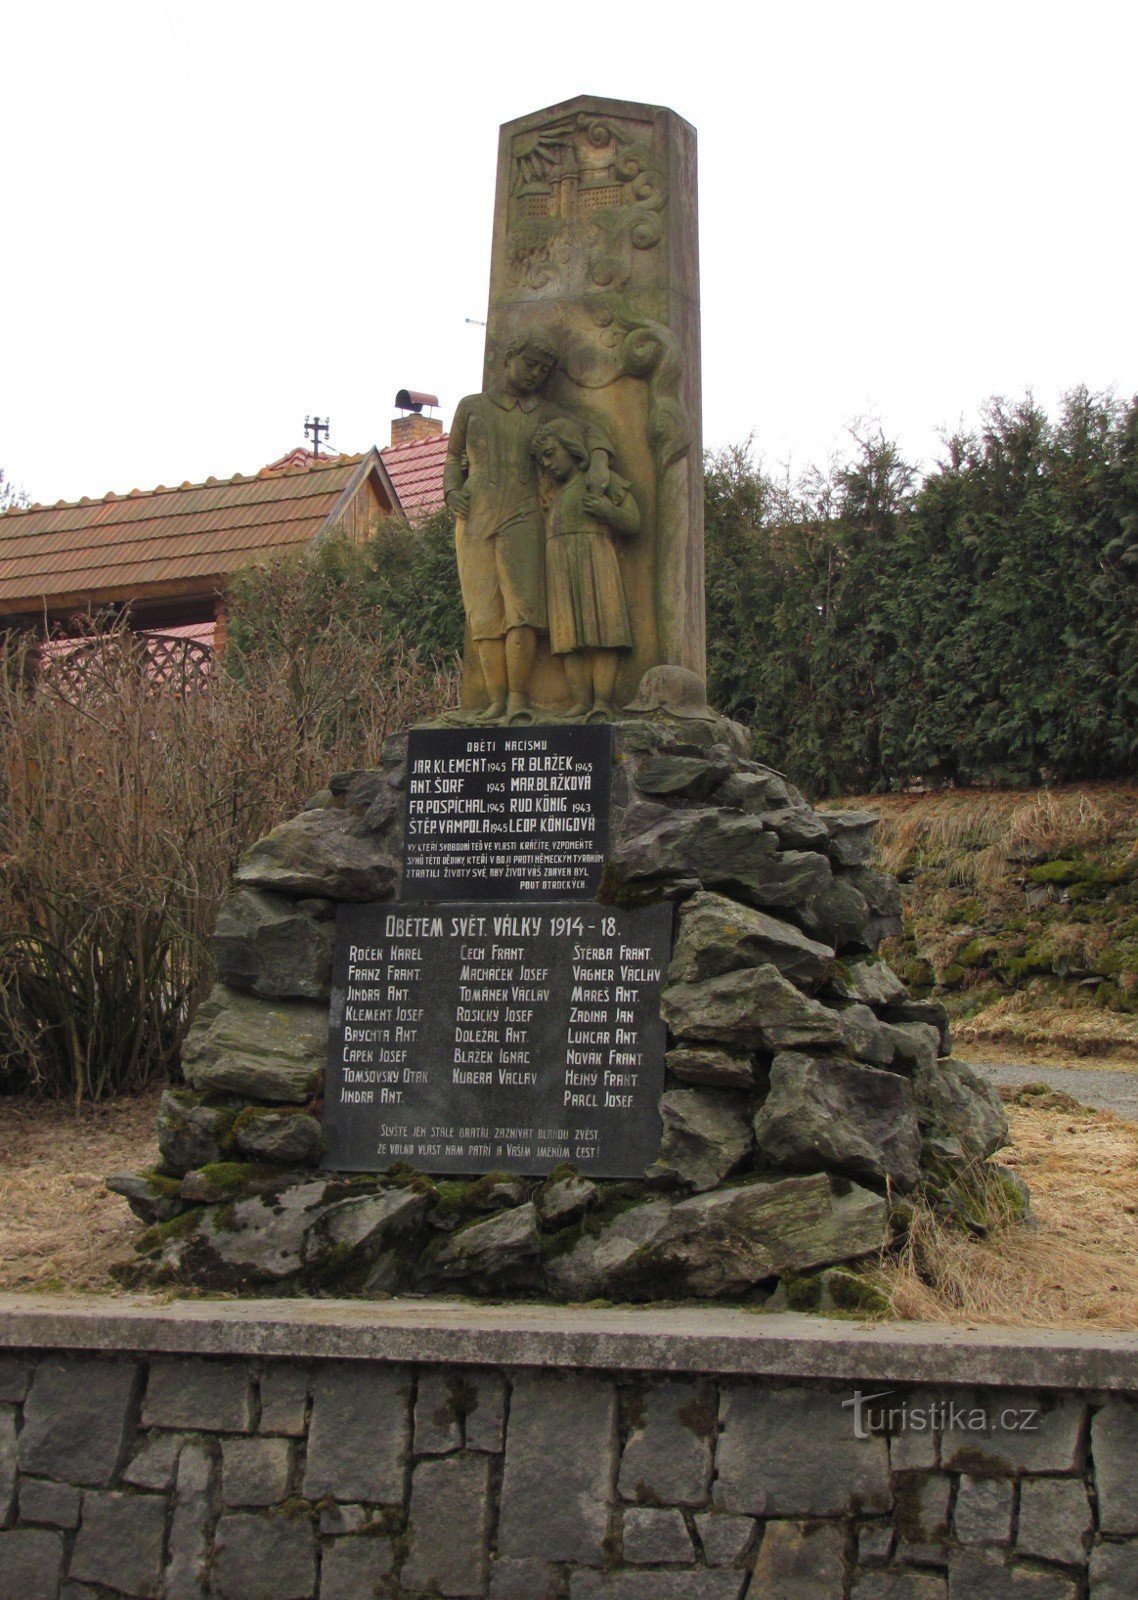 Pomnik ofiar I wojny światowej